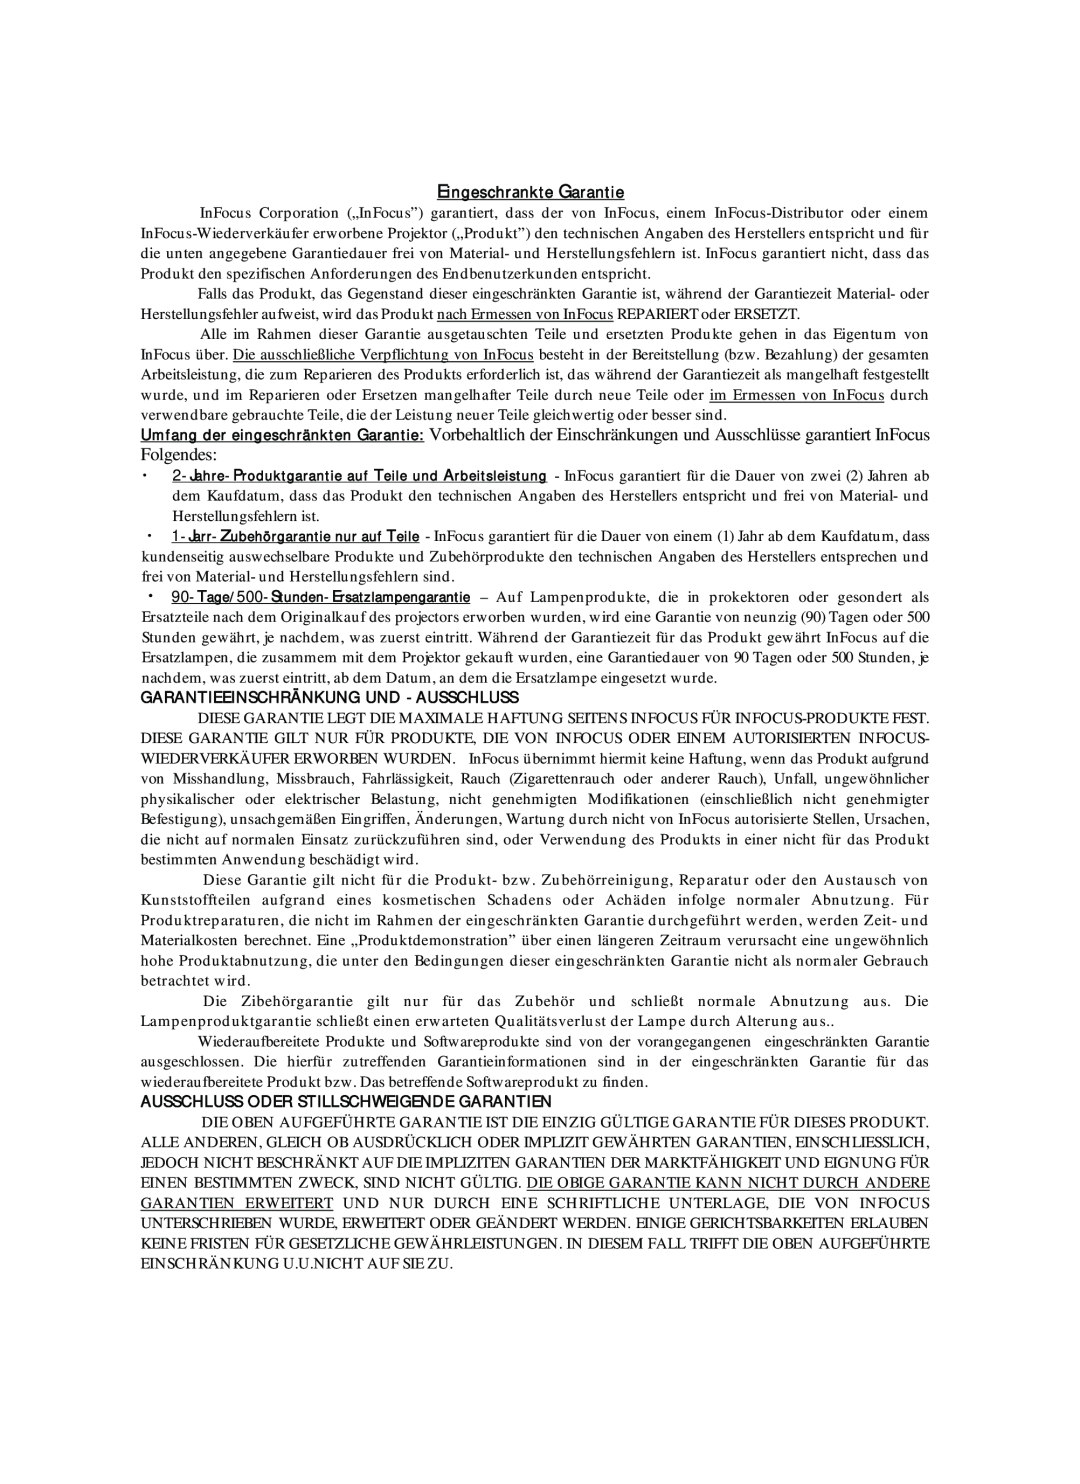 Proxima ASA DP6870 manual Eingeschrankte Garantie, Garantieeinschränkung Und -Ausschluss 